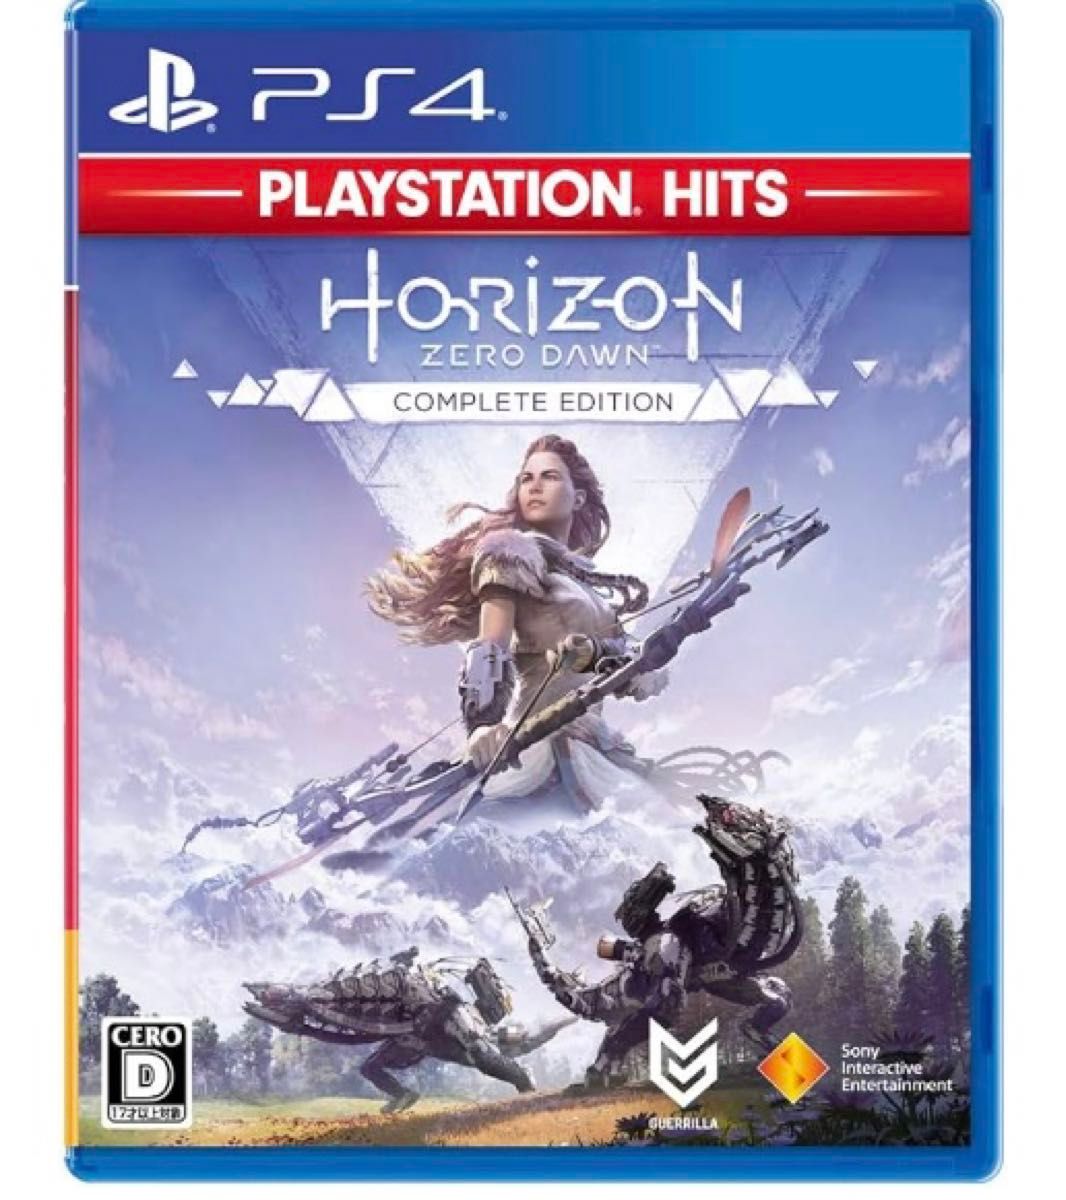 PS4 Horizon Zero Dawn Complete Edition 